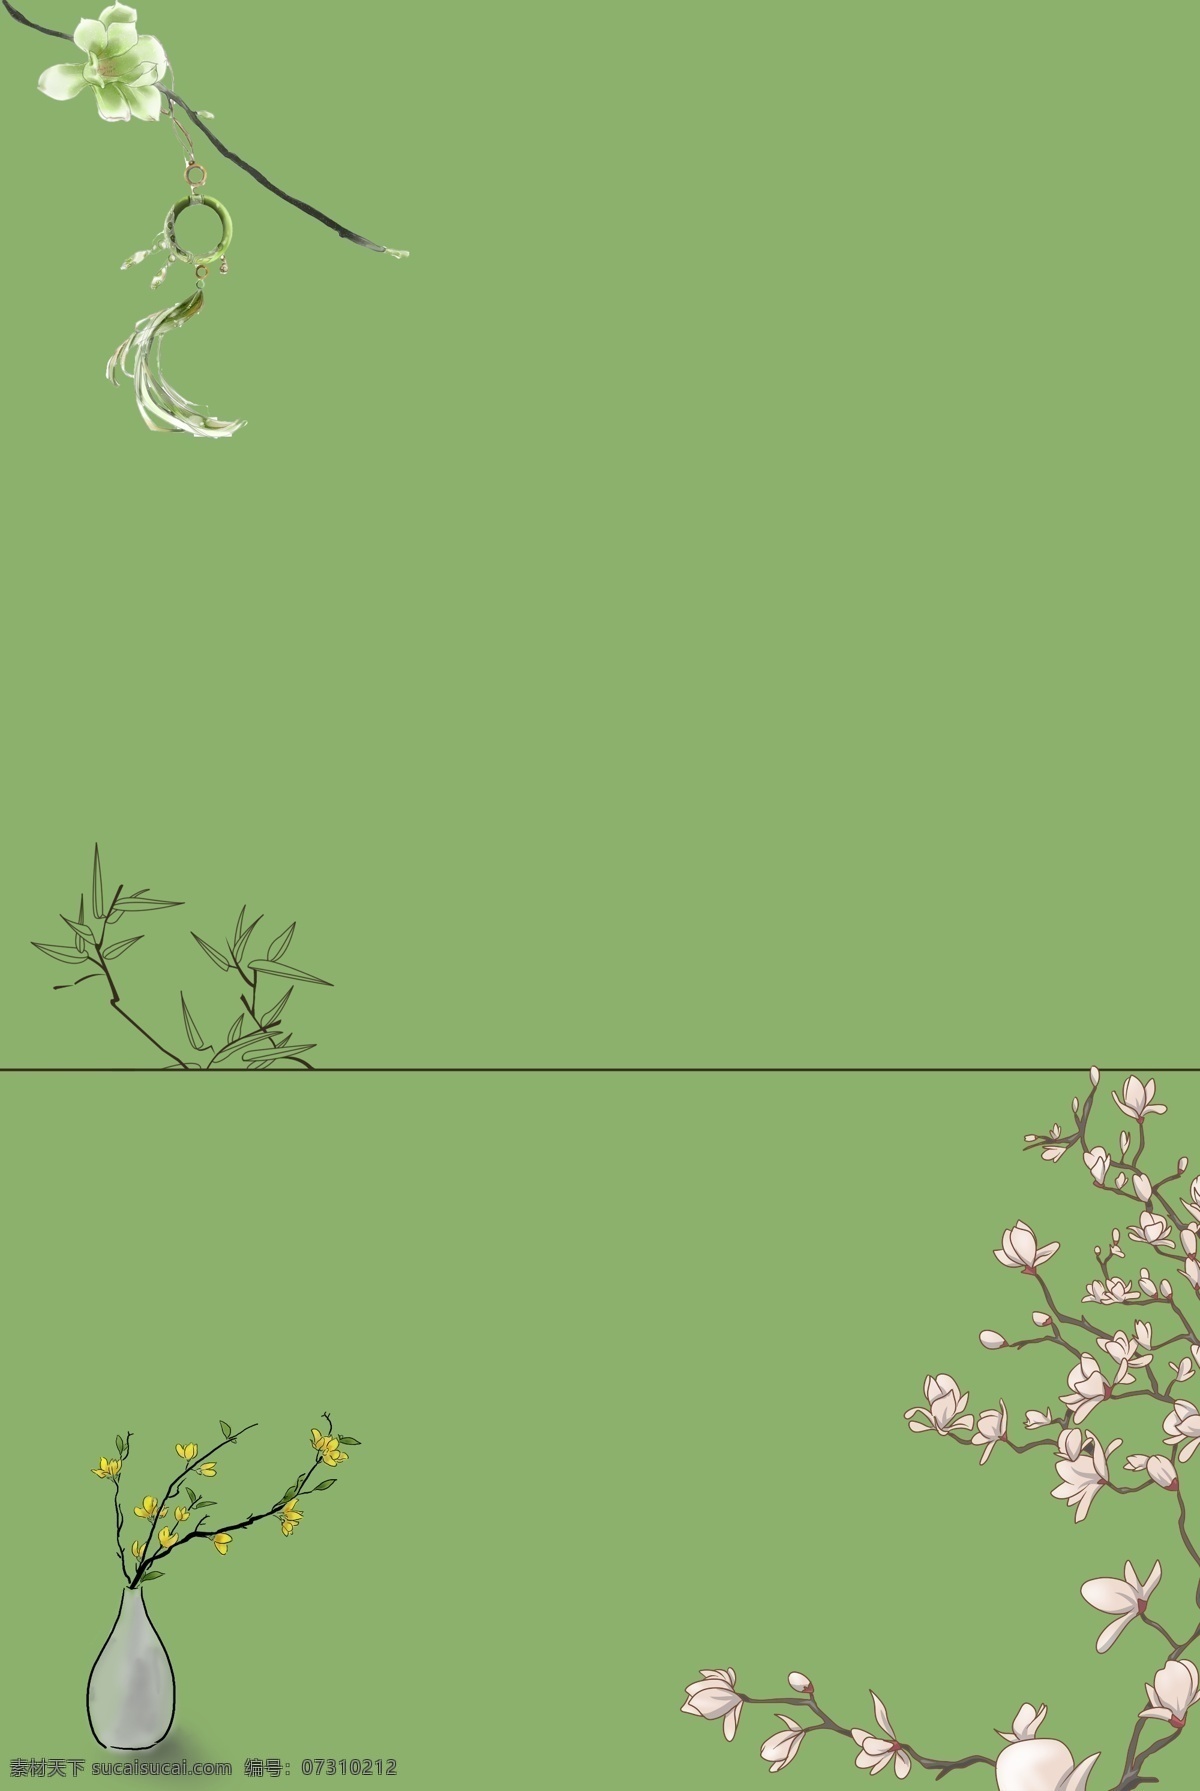 复古 素雅 花卉 海报 背景 图 背景图 绿色 竹子 分割线 中国